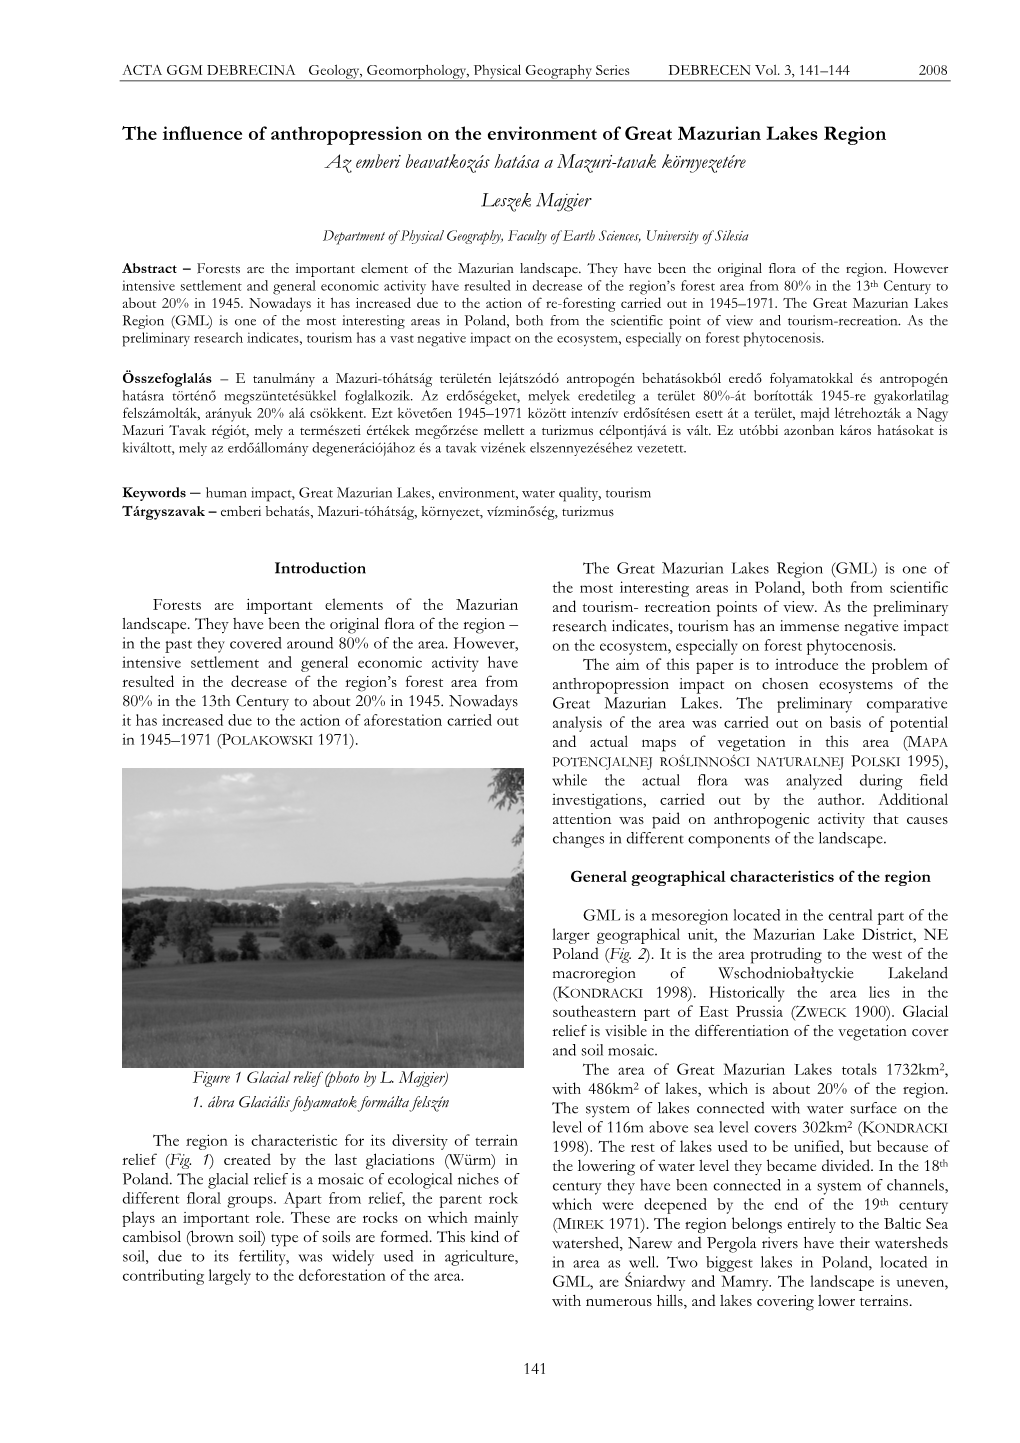 The Influence of Anthropopression on the Environment of Great Mazurian Lakes Region Az Emberi Beavatkozás Hatása a Mazuri-Tavak Környezetére Leszek Majgier